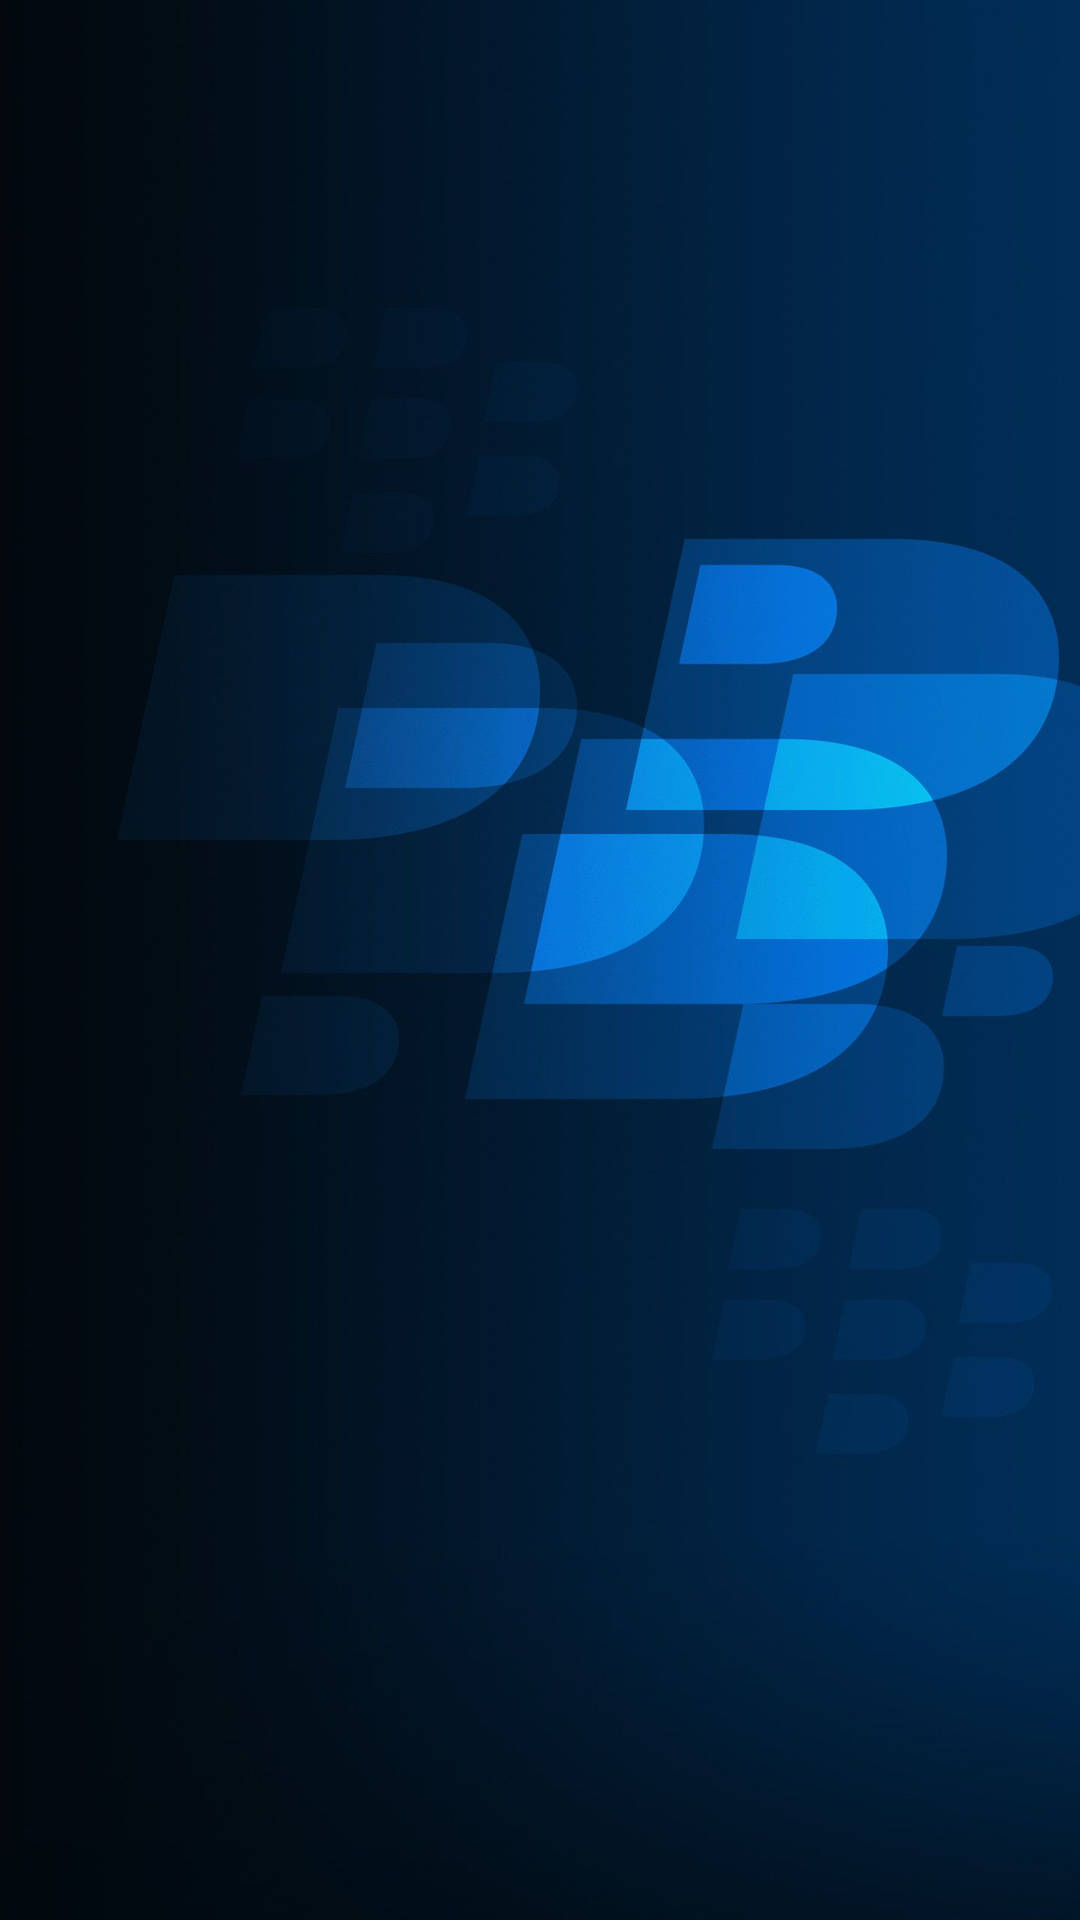 Blackberryblaues Logo Wallpaper